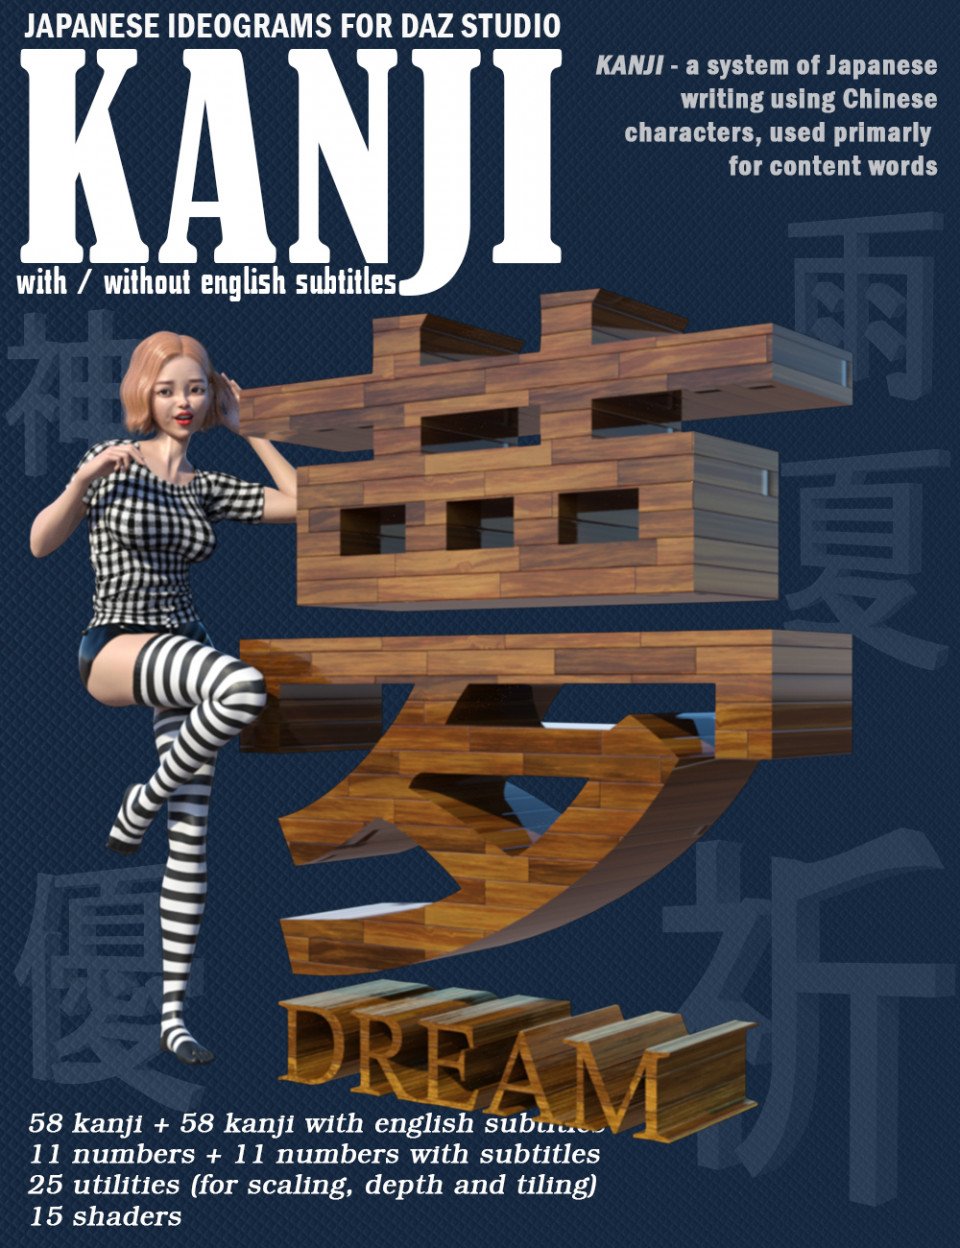 KANJI – Japanese Ideograms for DAZ Studio_DAZ3DDL